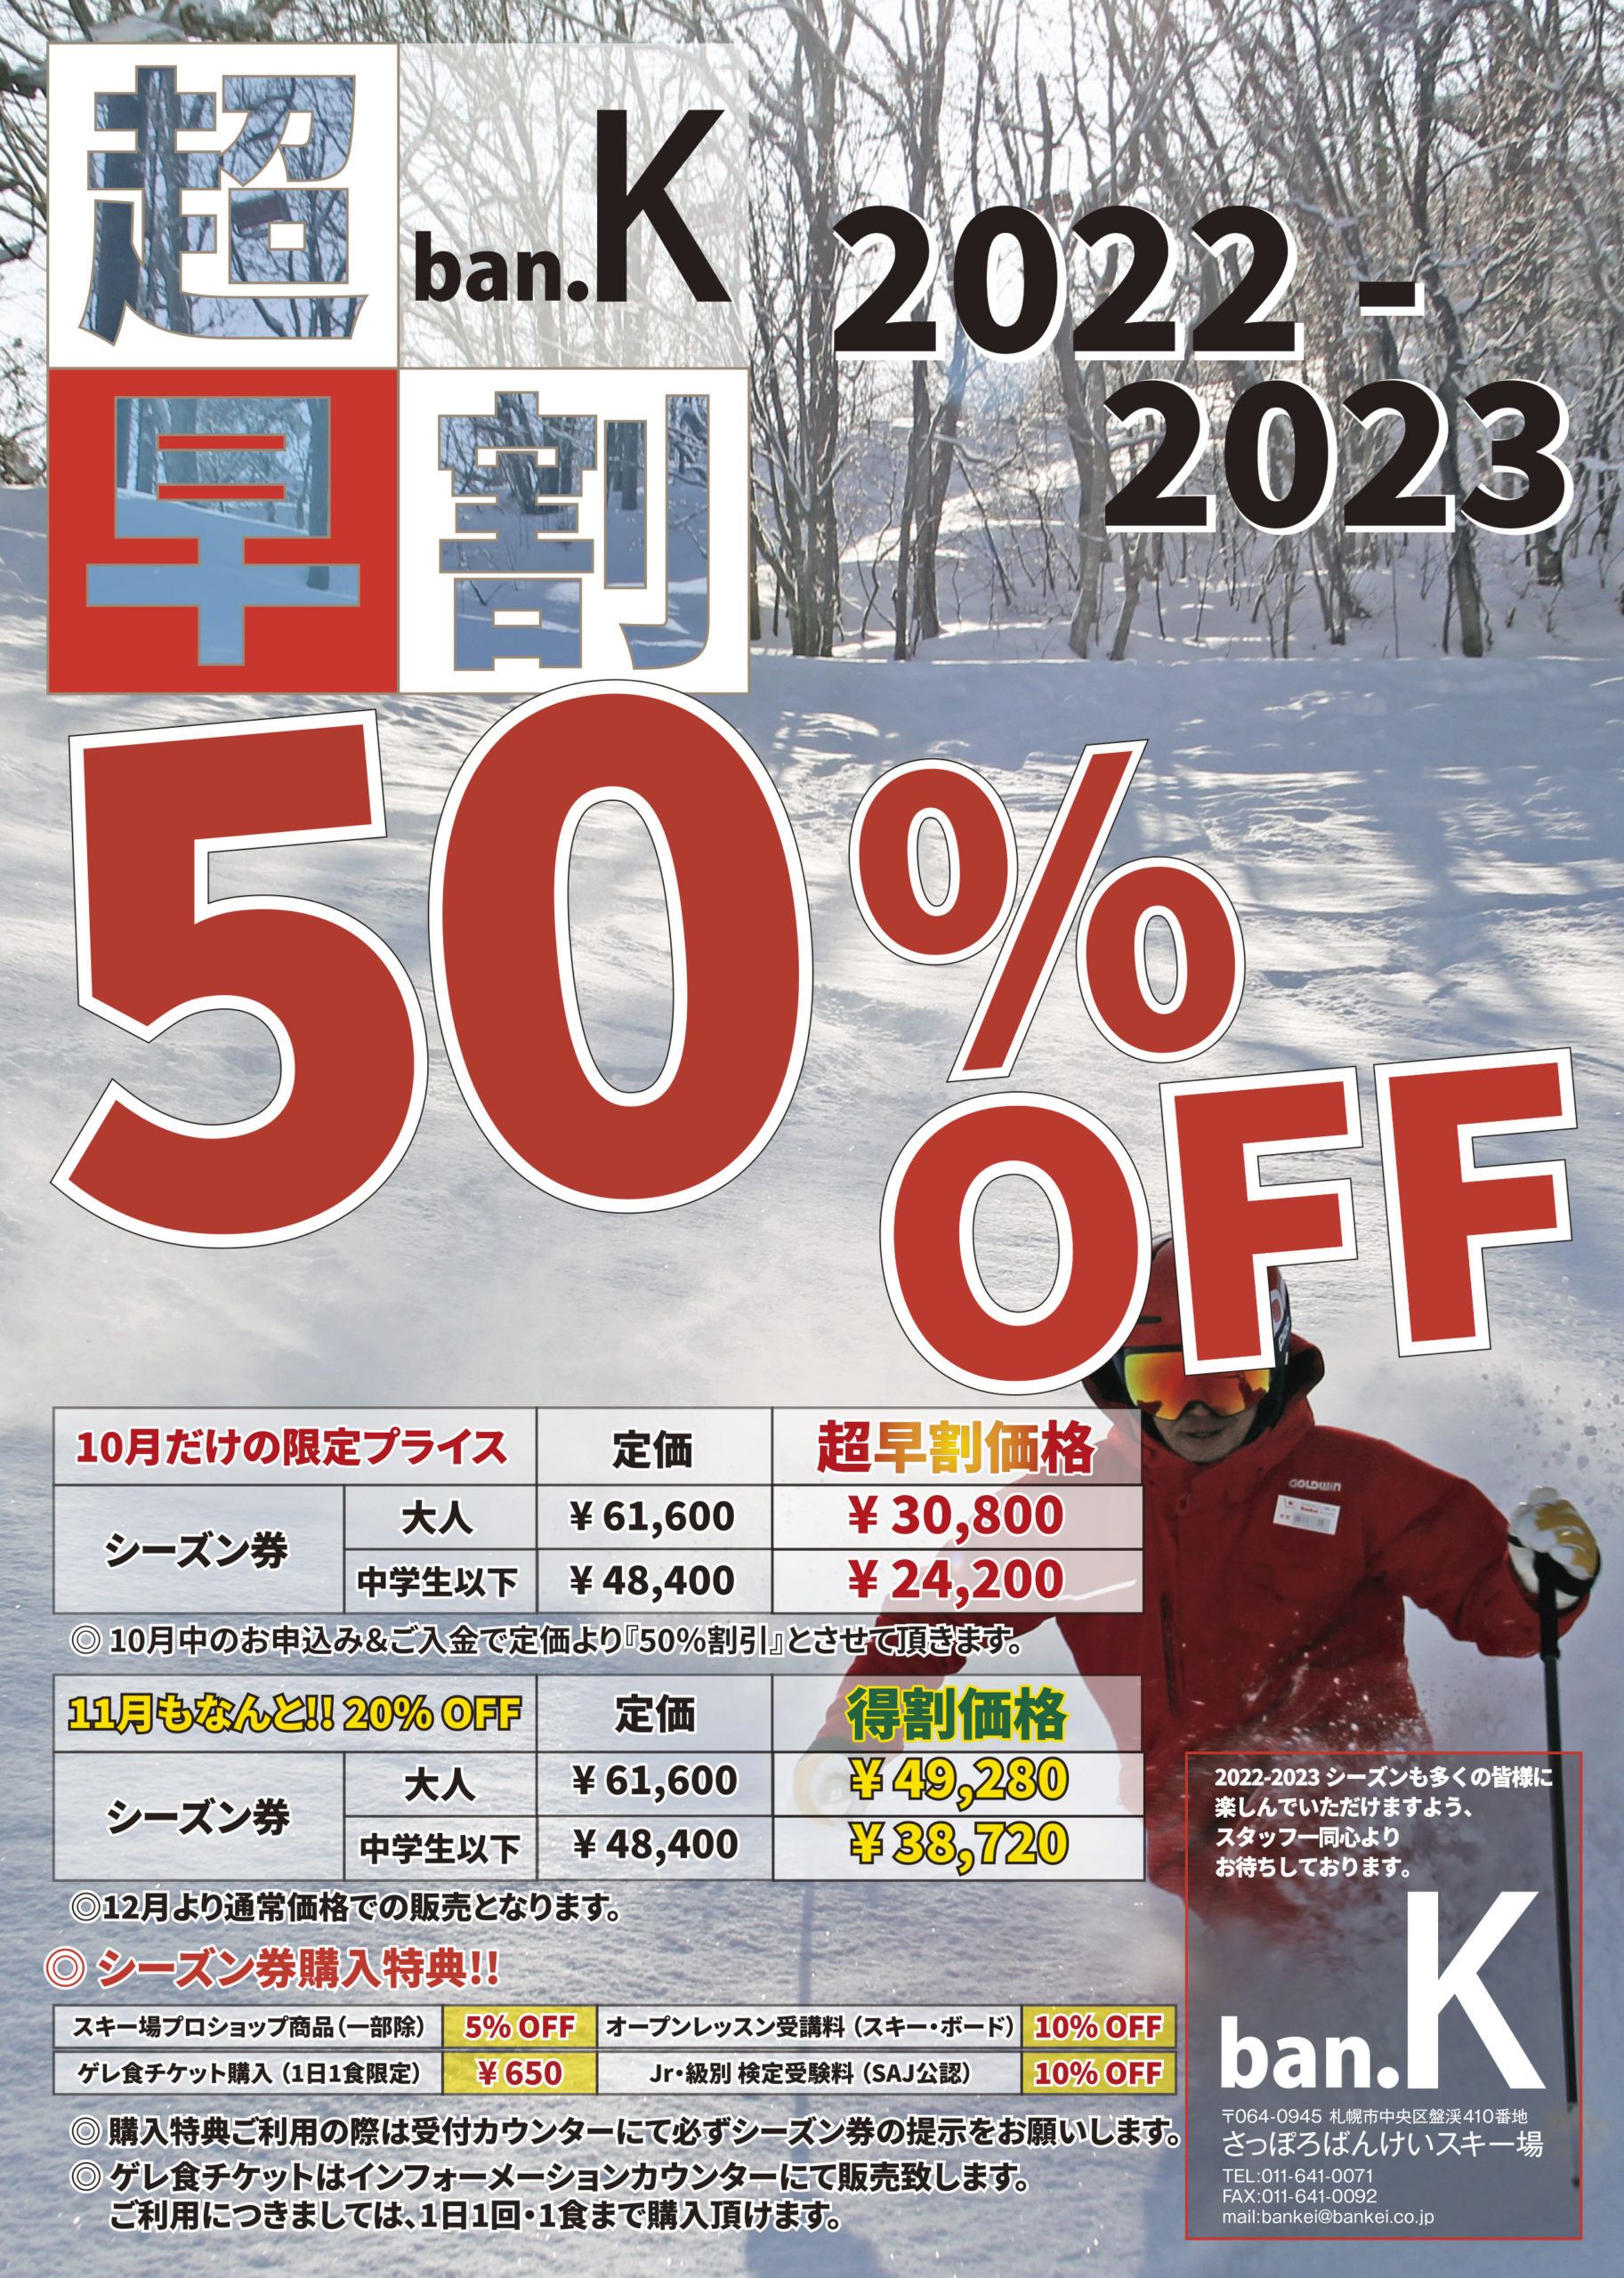 超早割シーズン券発売のお知らせ | 北海道でスキー・スノボーなら札幌